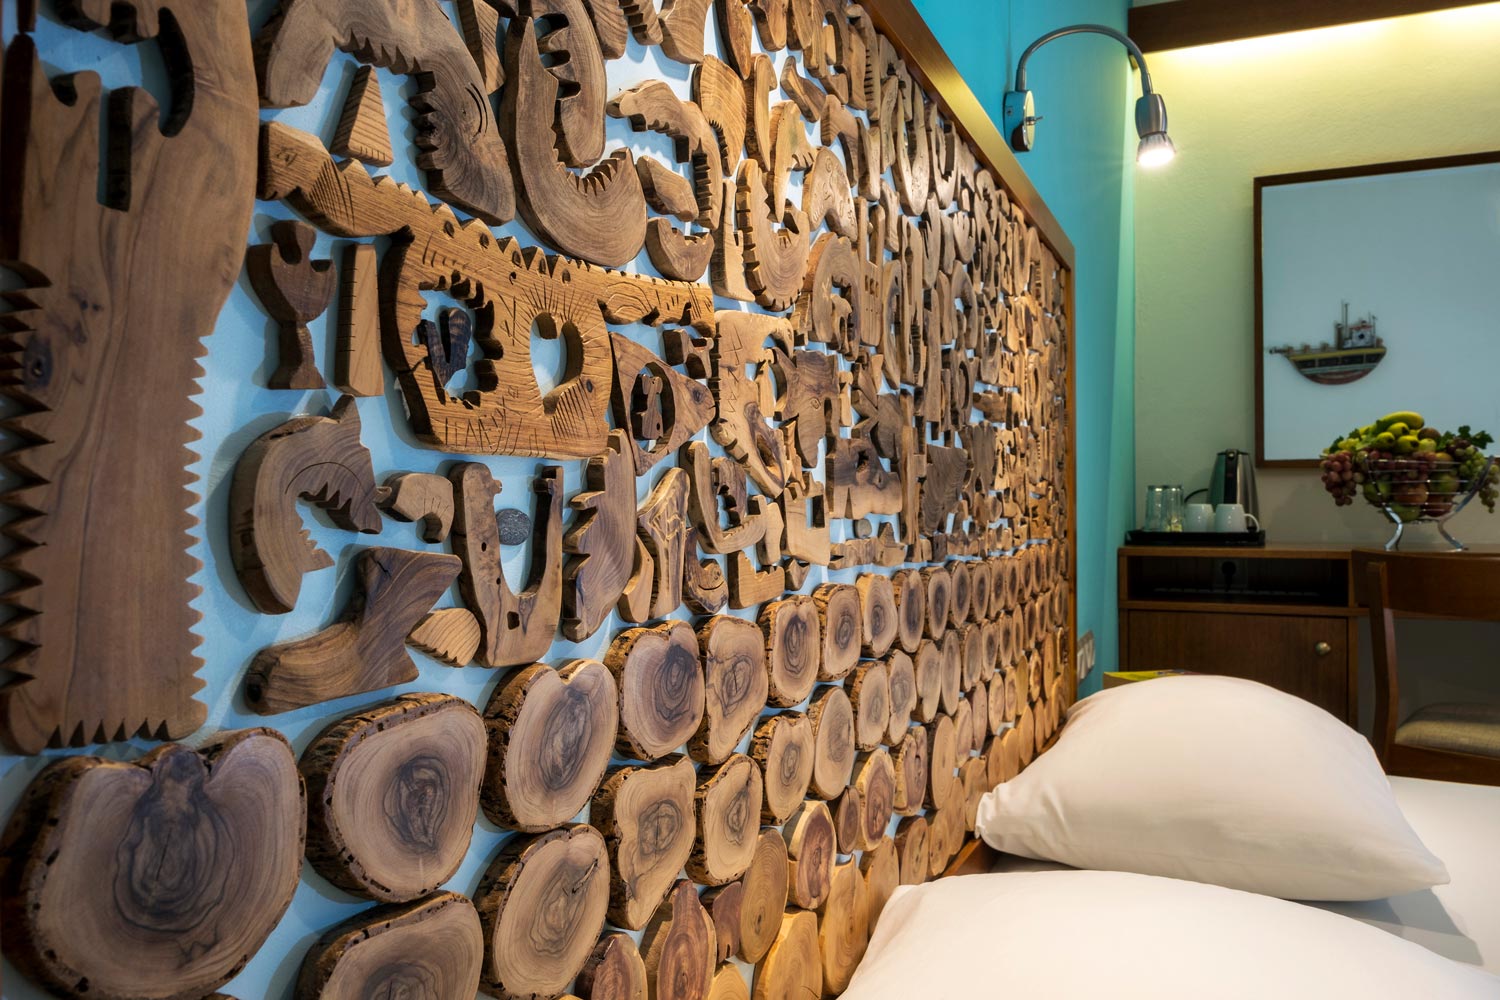 Handmade wooden art at beds headboard